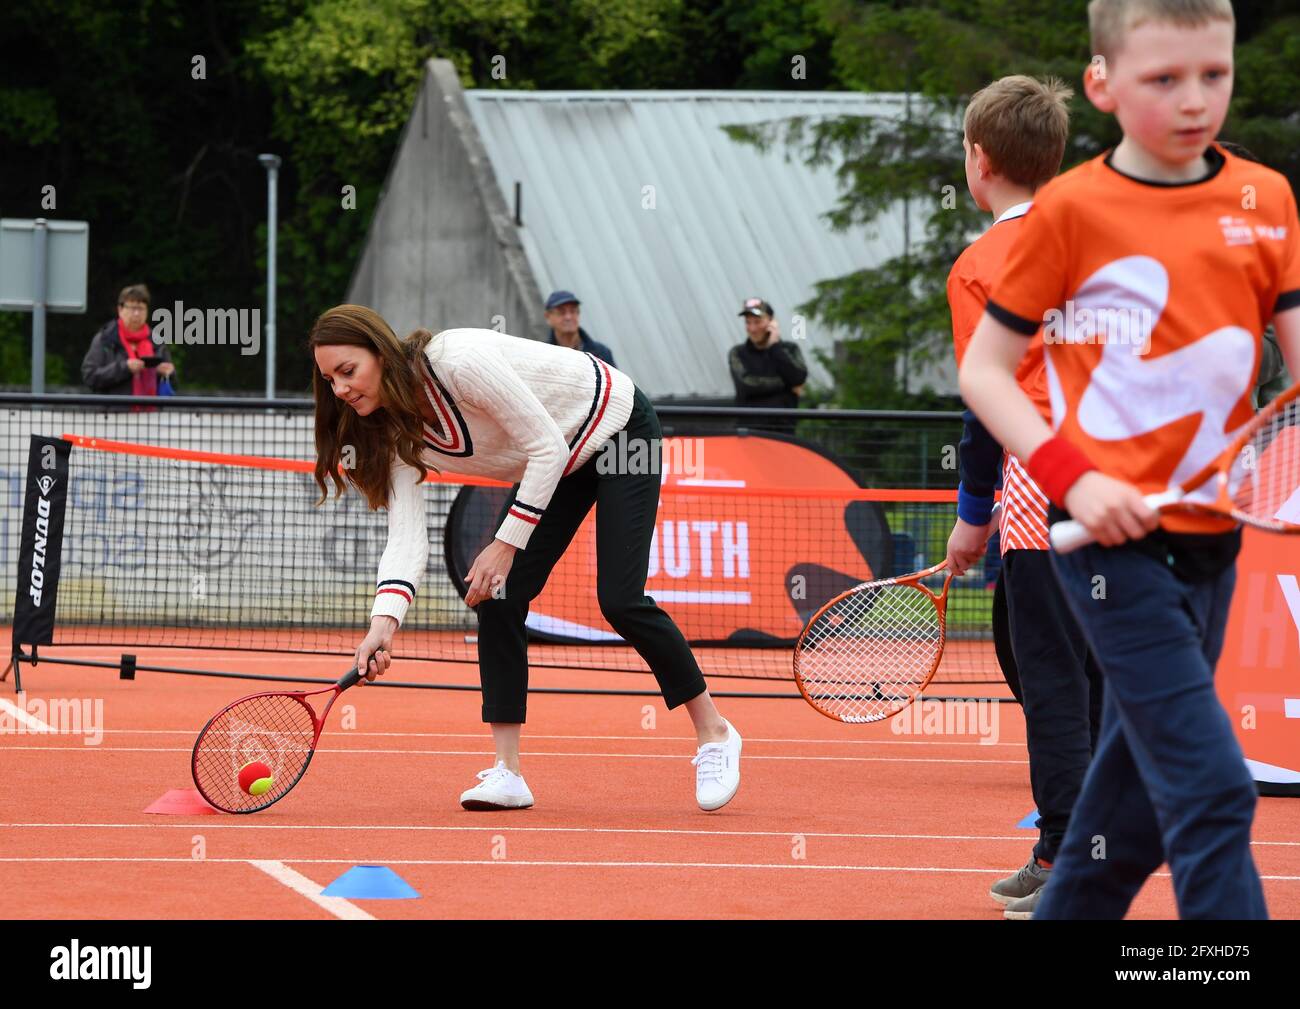 Die Herzogin von Cambridge spielt Tennisspiele mit lokalen Schulkindern während eines Besuchs der LTA Youth Tennis Association (LTA) in Edinburgh. Bilddatum: Donnerstag, 27. Mai 2021. Stockfoto